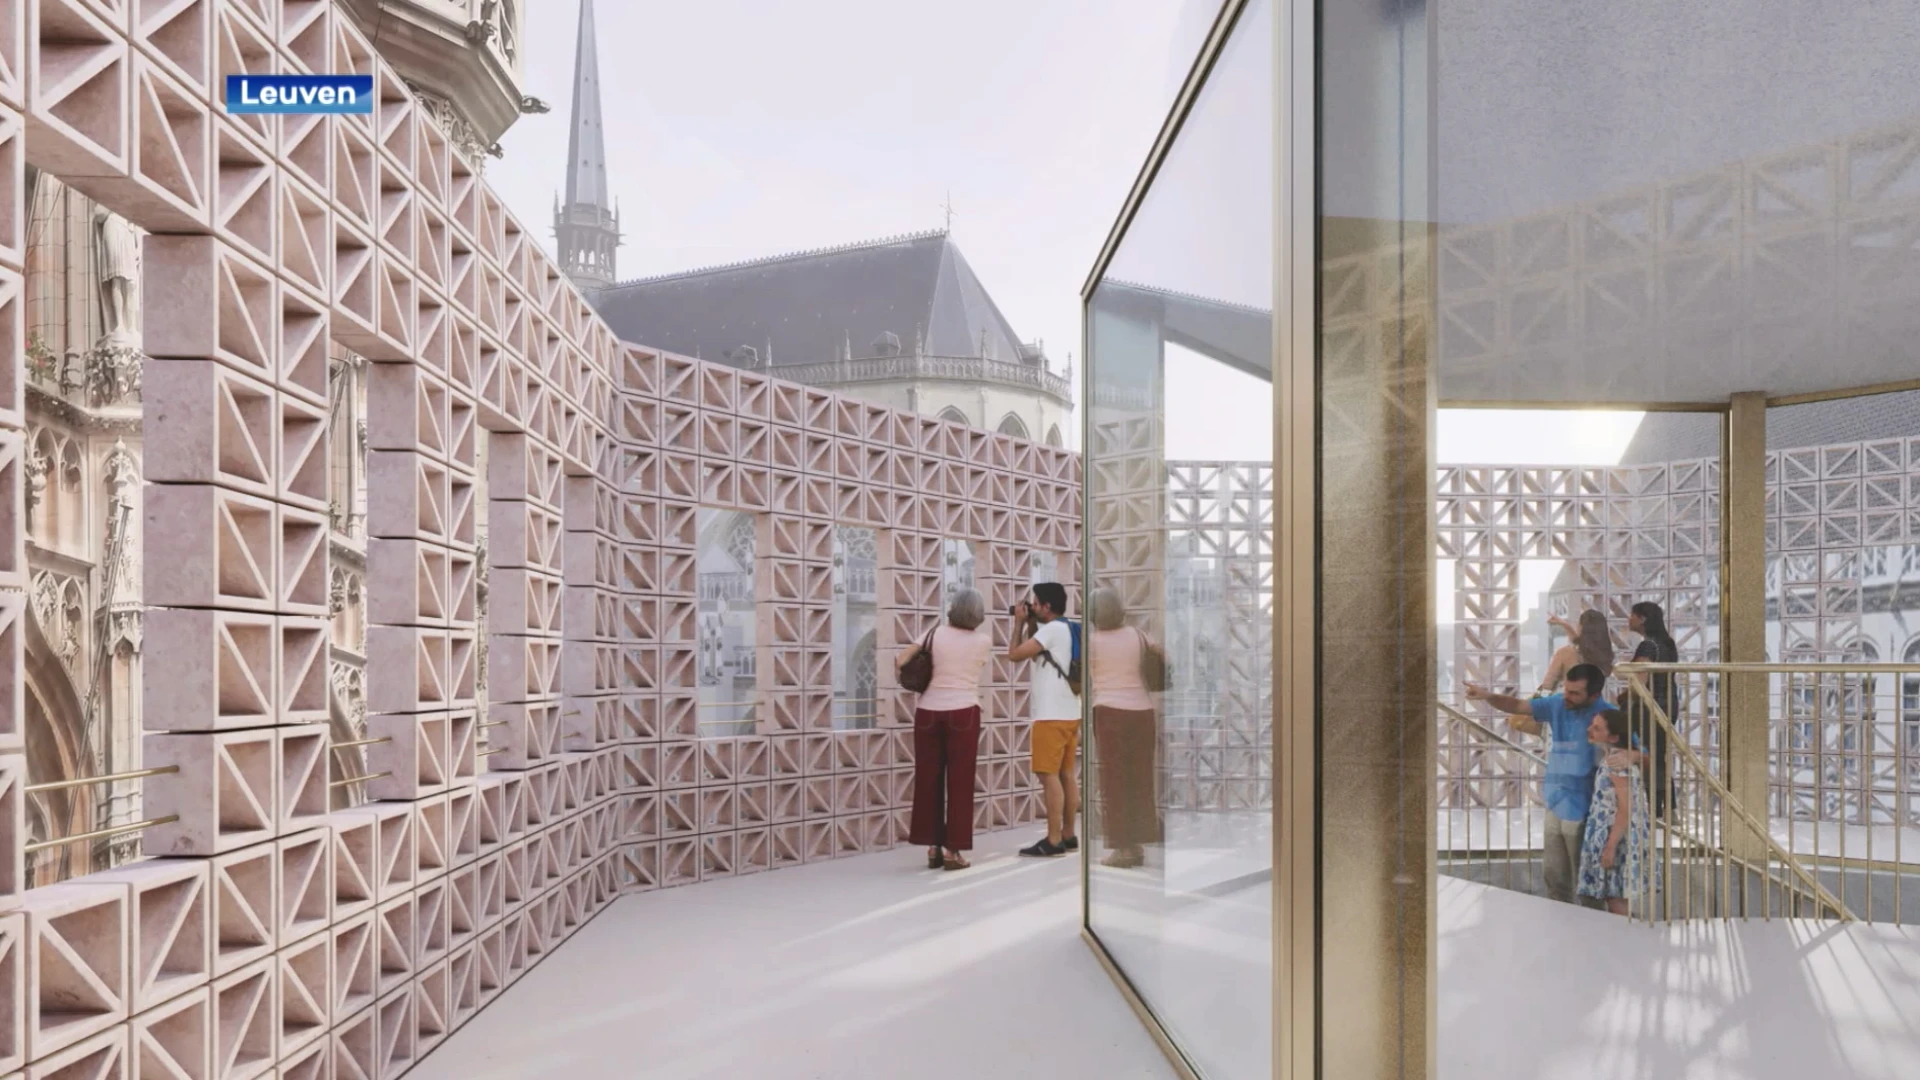 Stadhuis in Leuven krijgt bij renovatie ook een "uitkijkpunt", Leuvenaars kunnen mening geven over nieuw voorontwerp tijdens infomarkt